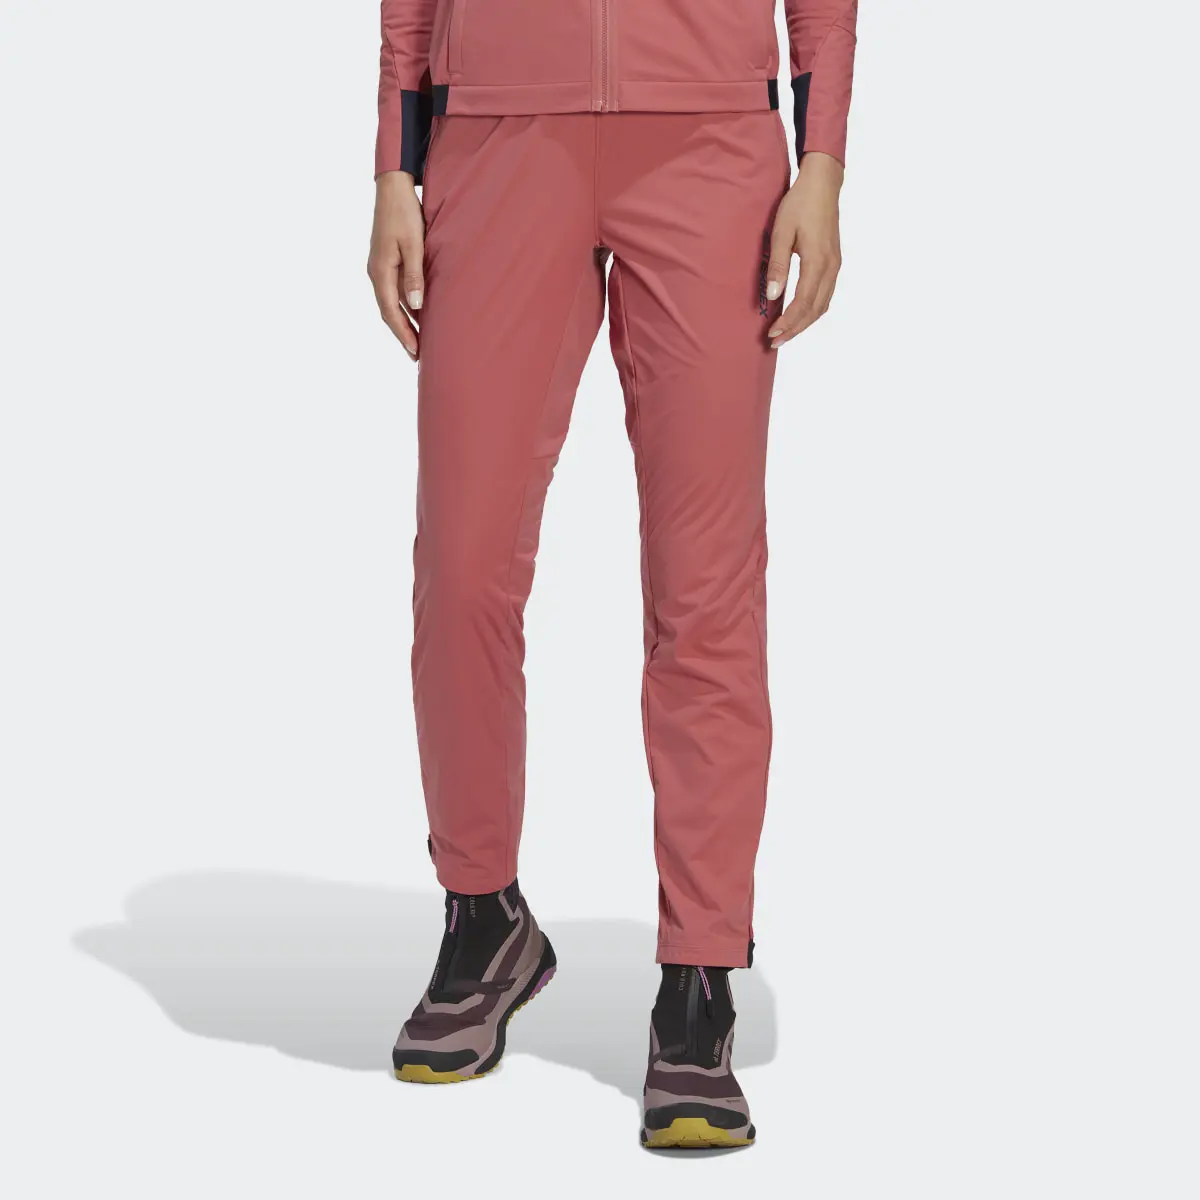 Adidas Pantaloni da sci di fondo Terrex Xperior Soft Shell. 1